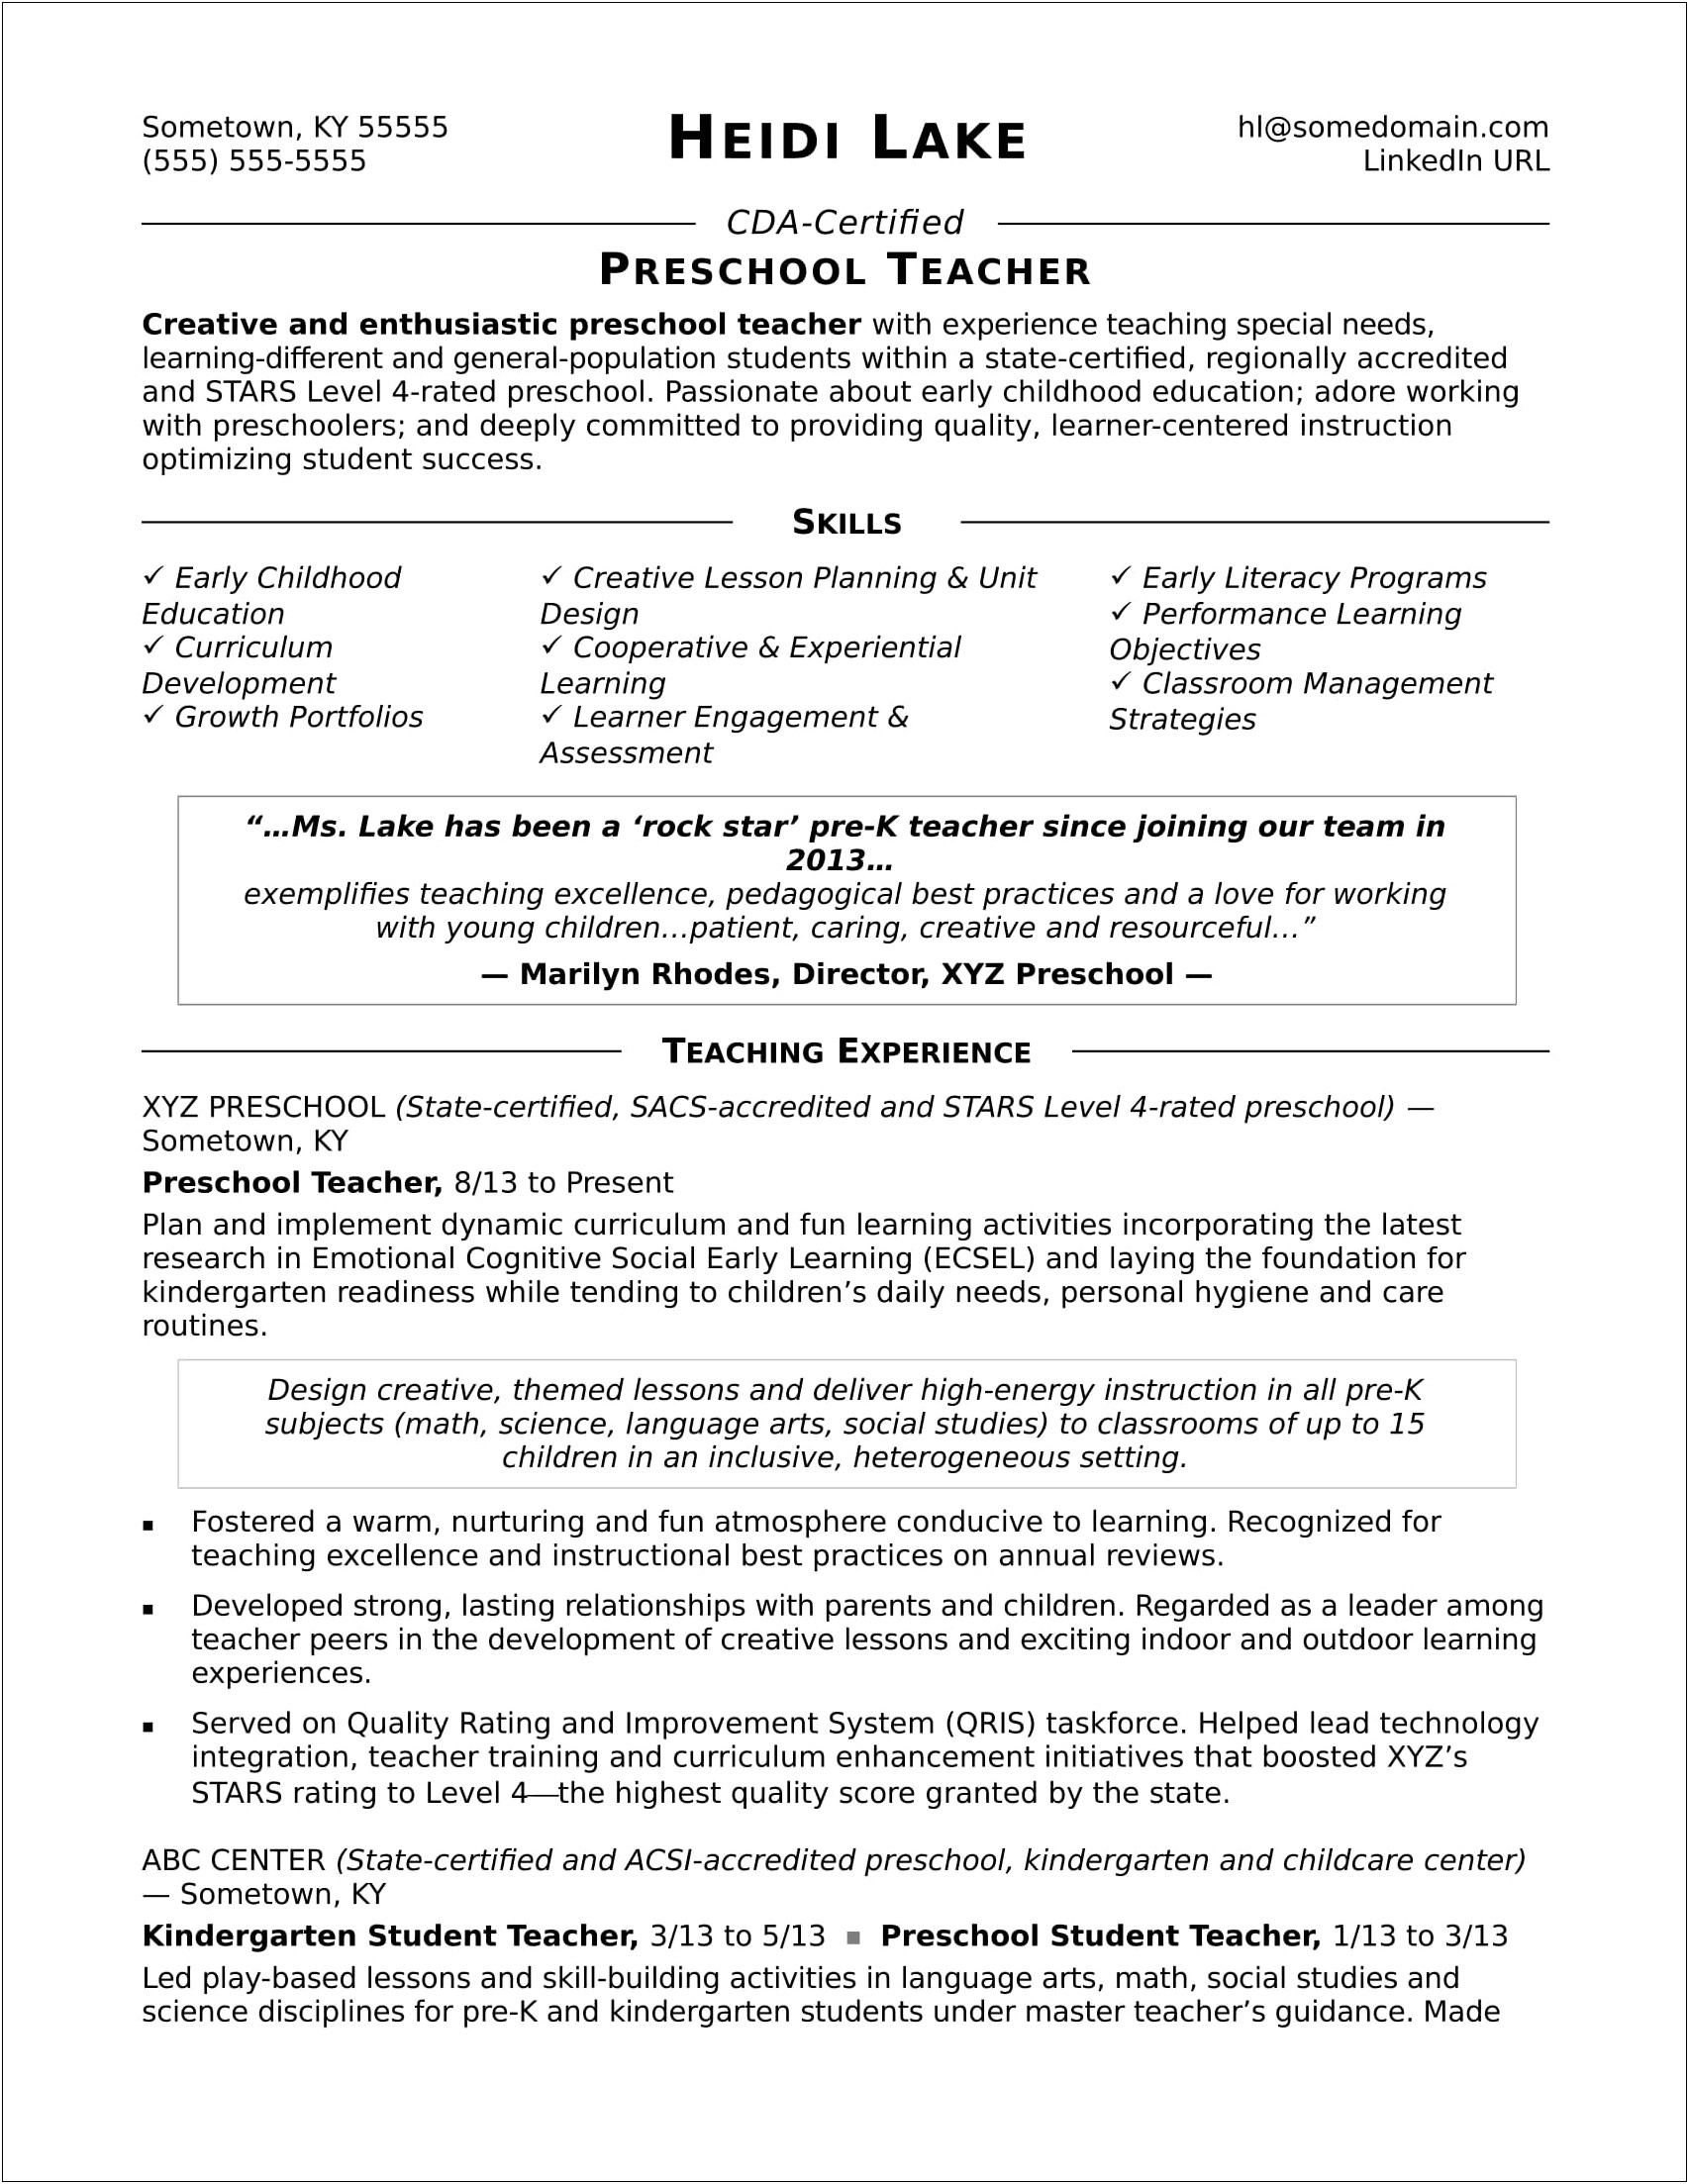 Resume For Play School Teacher Fresher